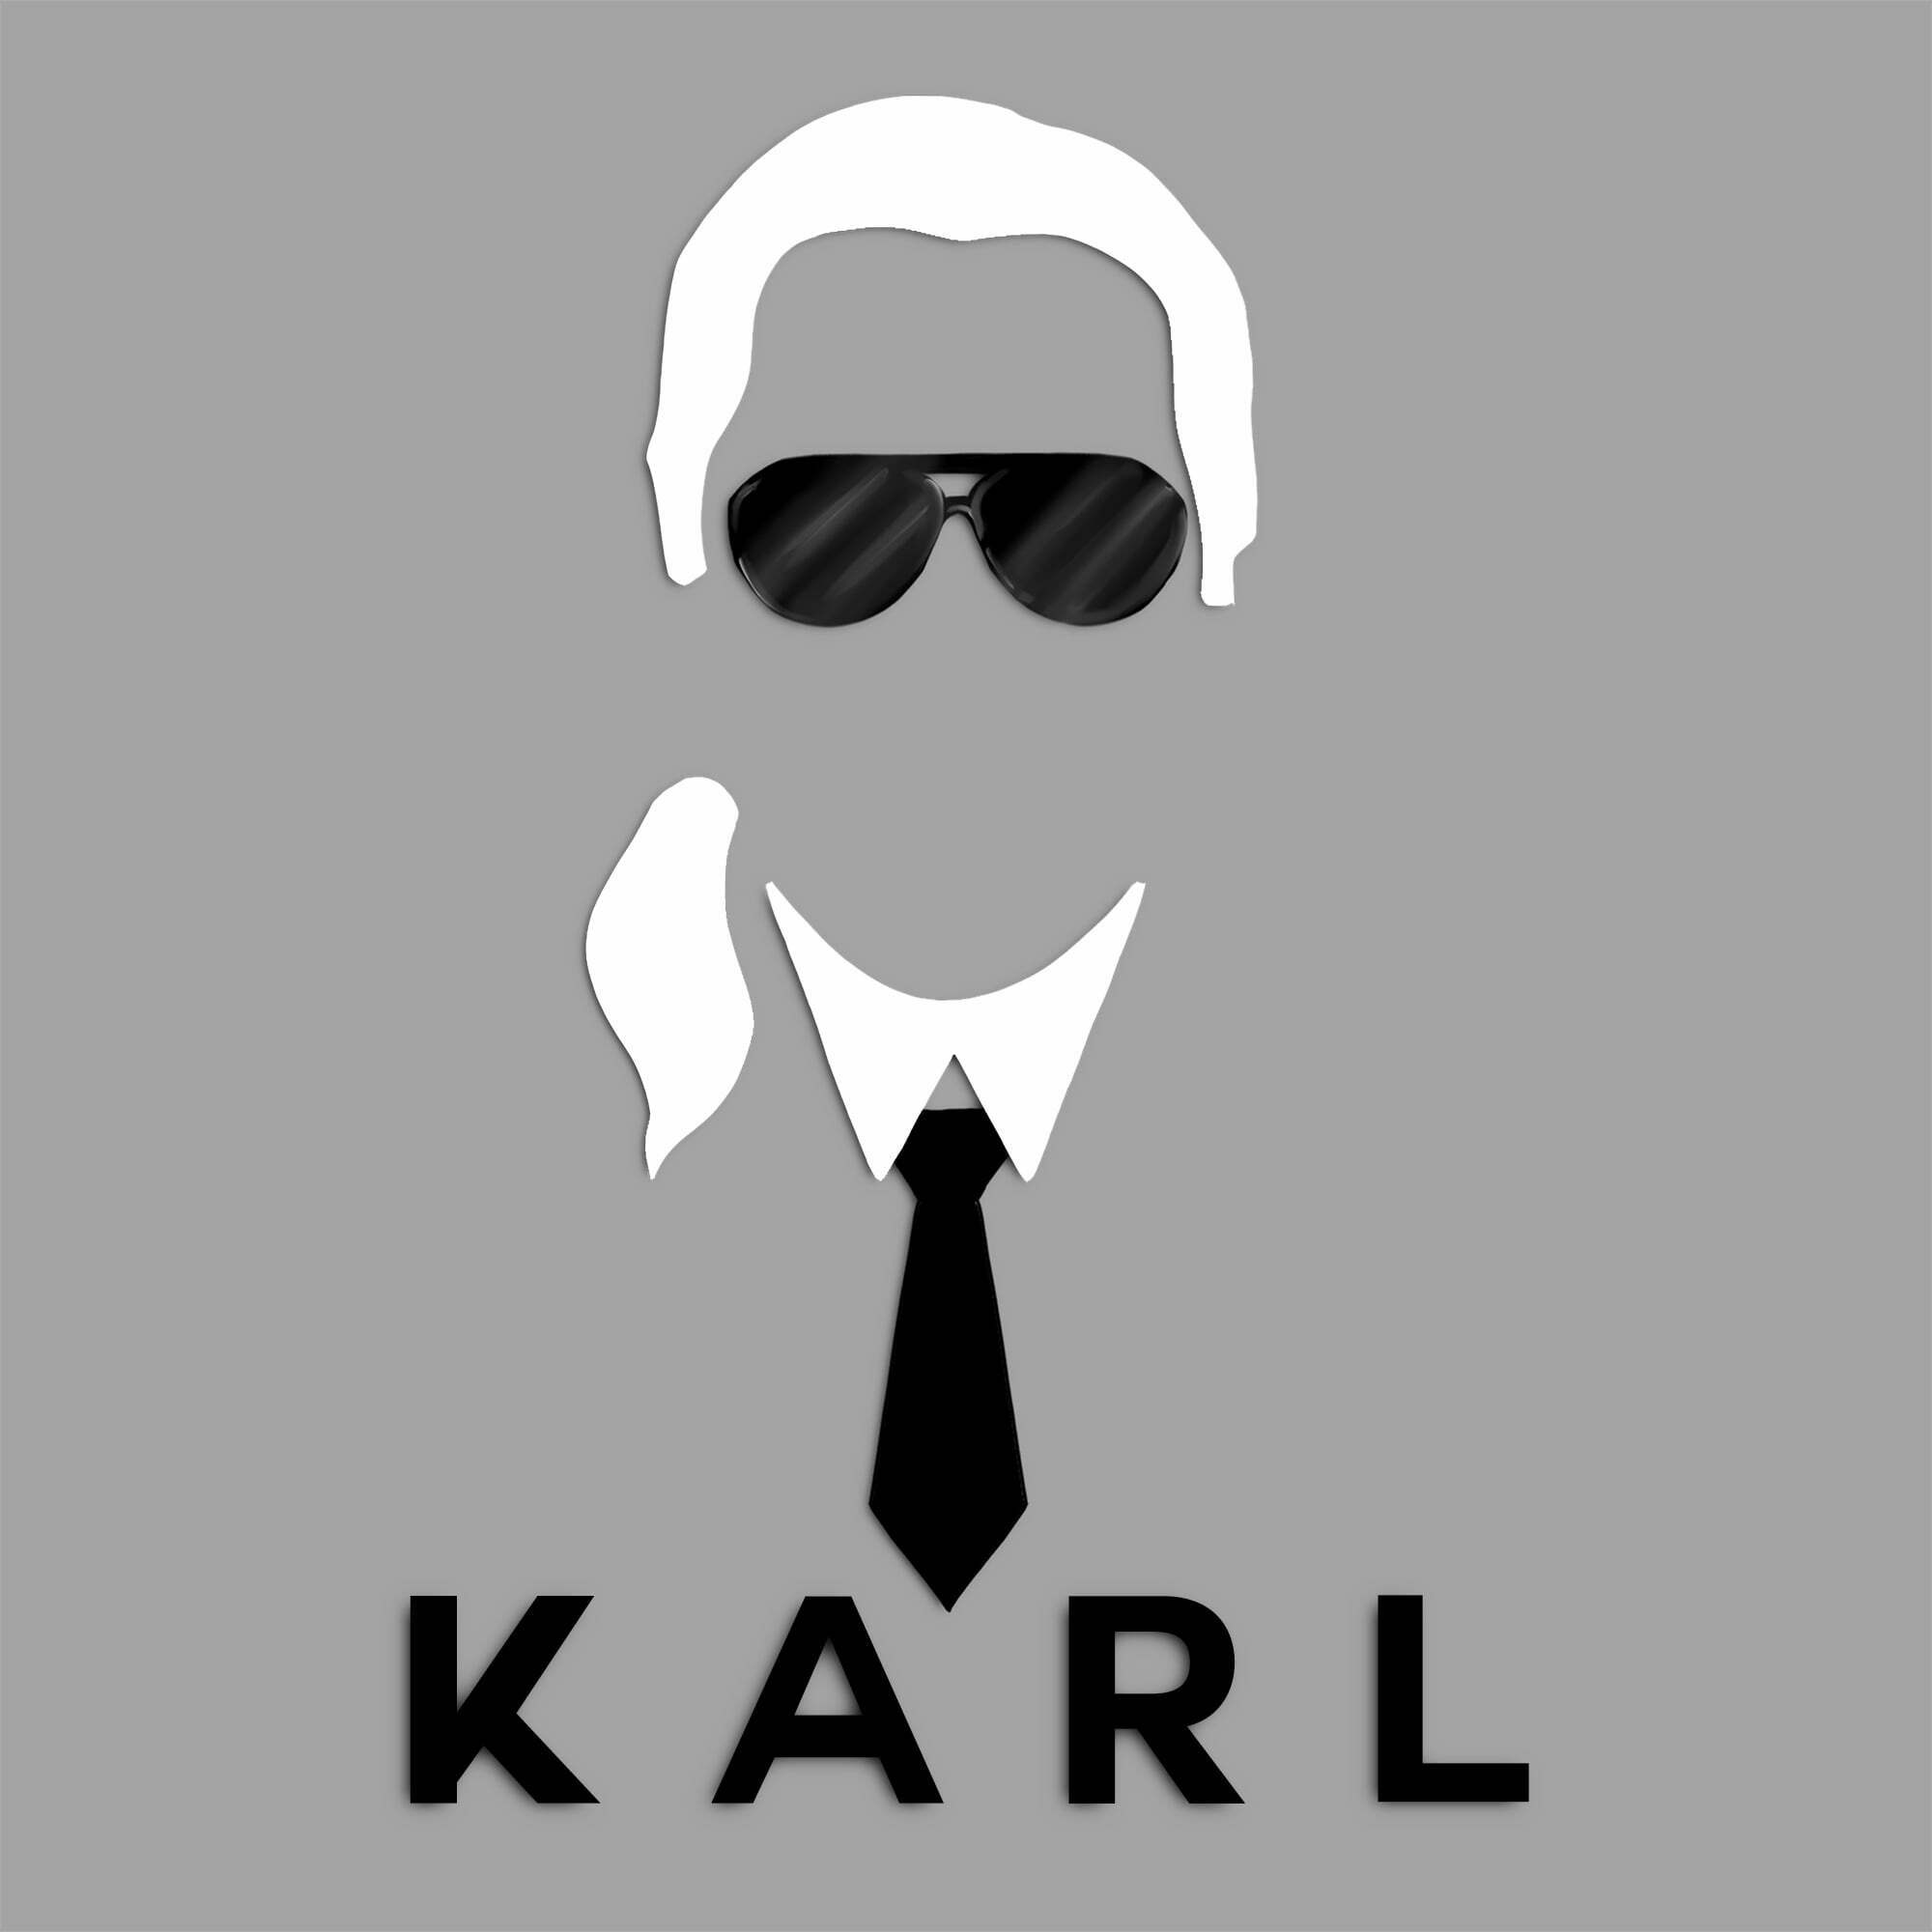 Karl Lagerfeld, Curatorial